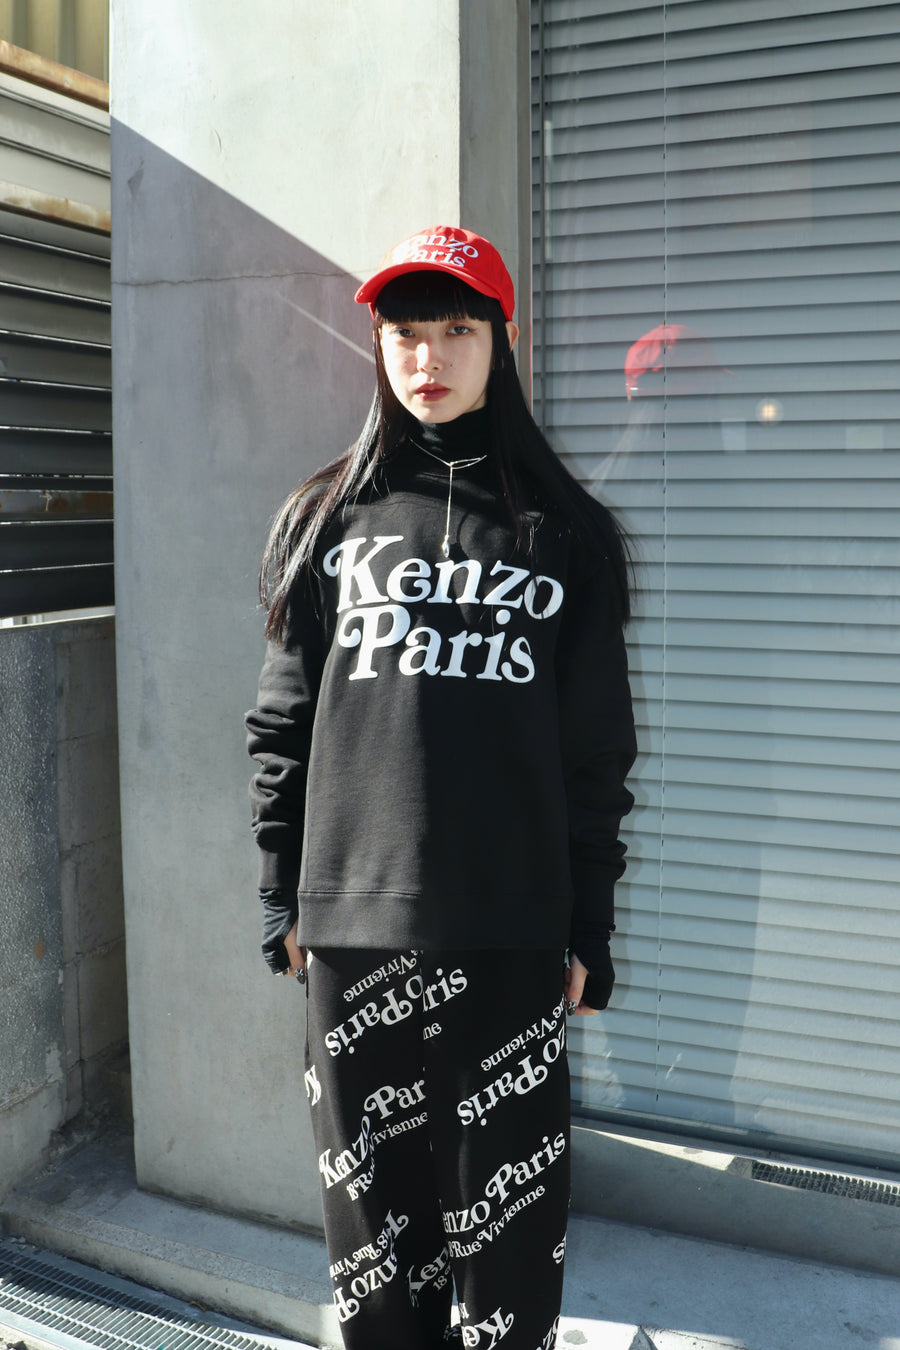 KENZO  CAP(MEDIUM RED)